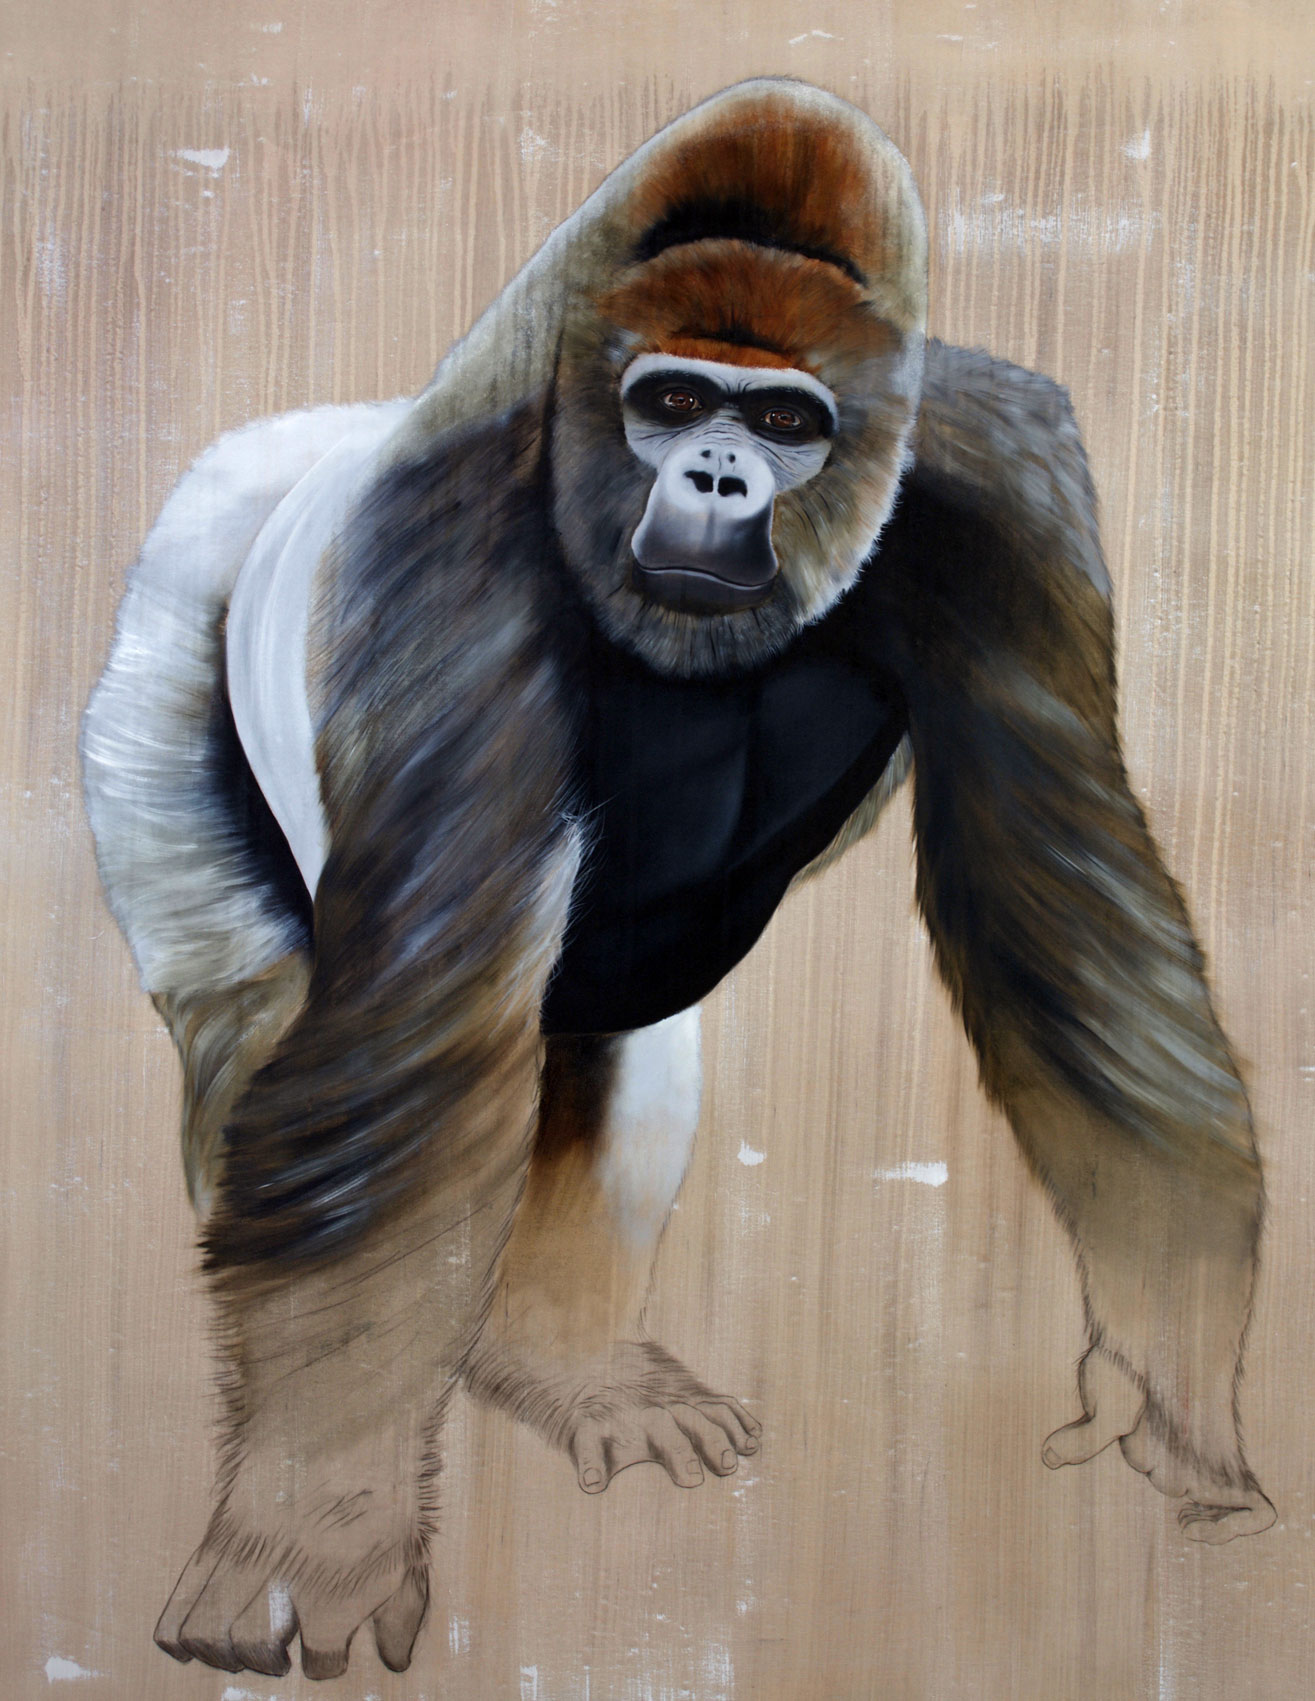 Gorilla gorilla  gorilla-ape-silverback-threatened-endangered-extinction Thierry Bisch Contemporary painter animals painting art decoration nature biodiversity conservation